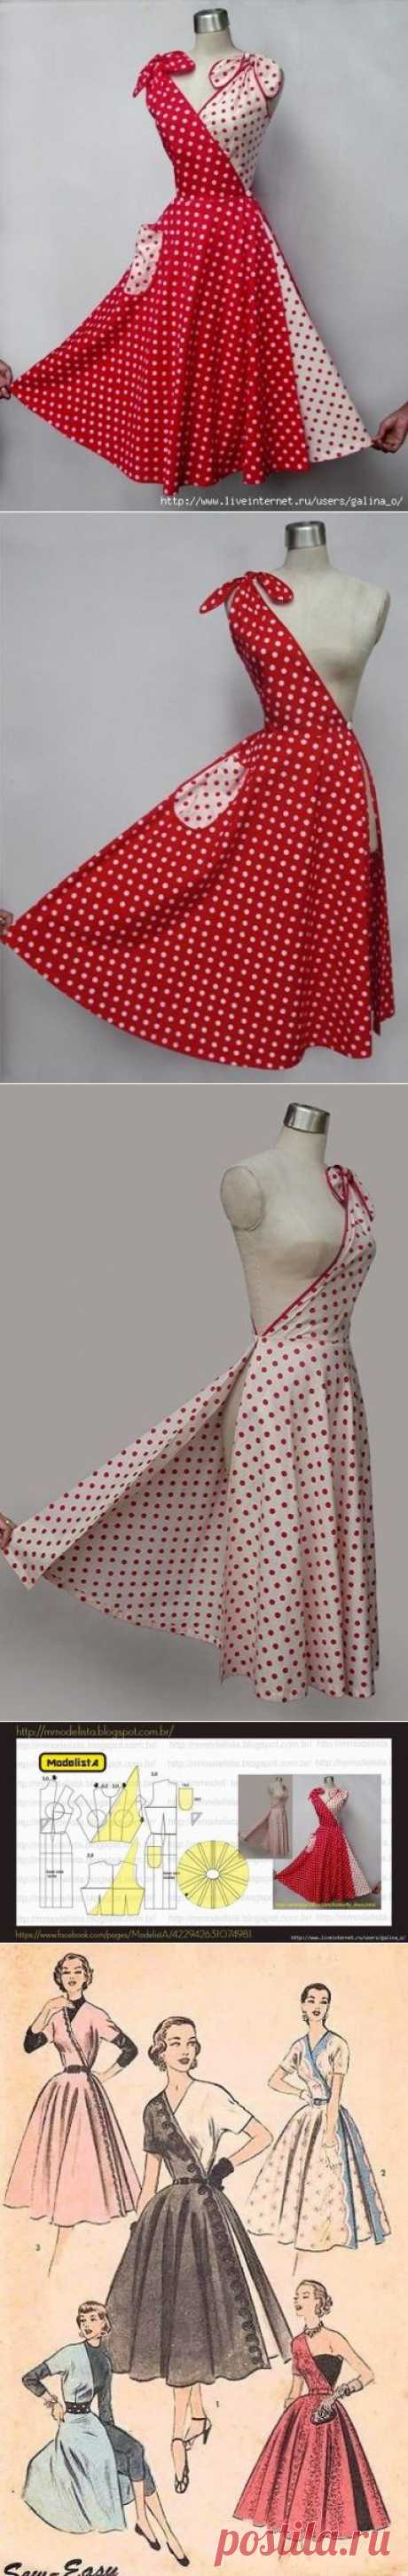 Платье трансформер 50-х годов